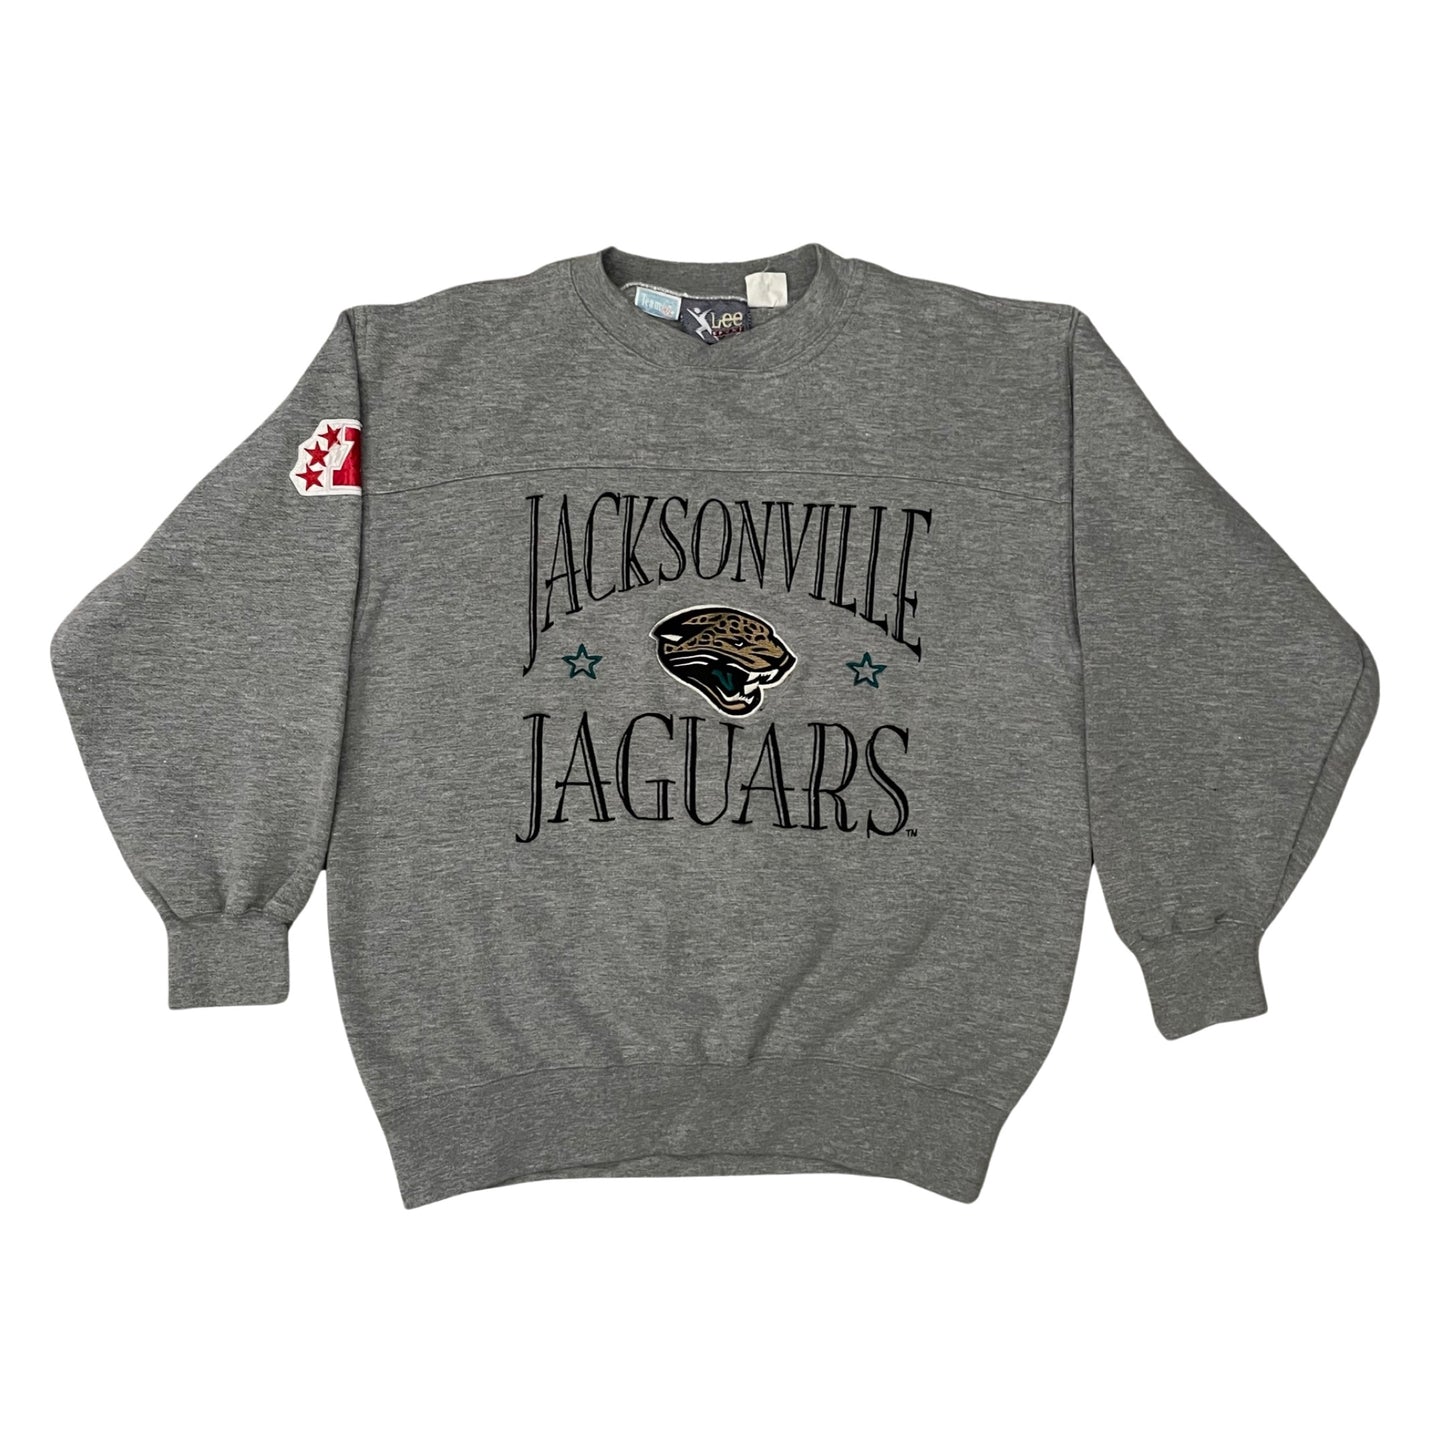 Vintage Jacksonville Jaguars Embroidered sweatshirt size MEDIUM